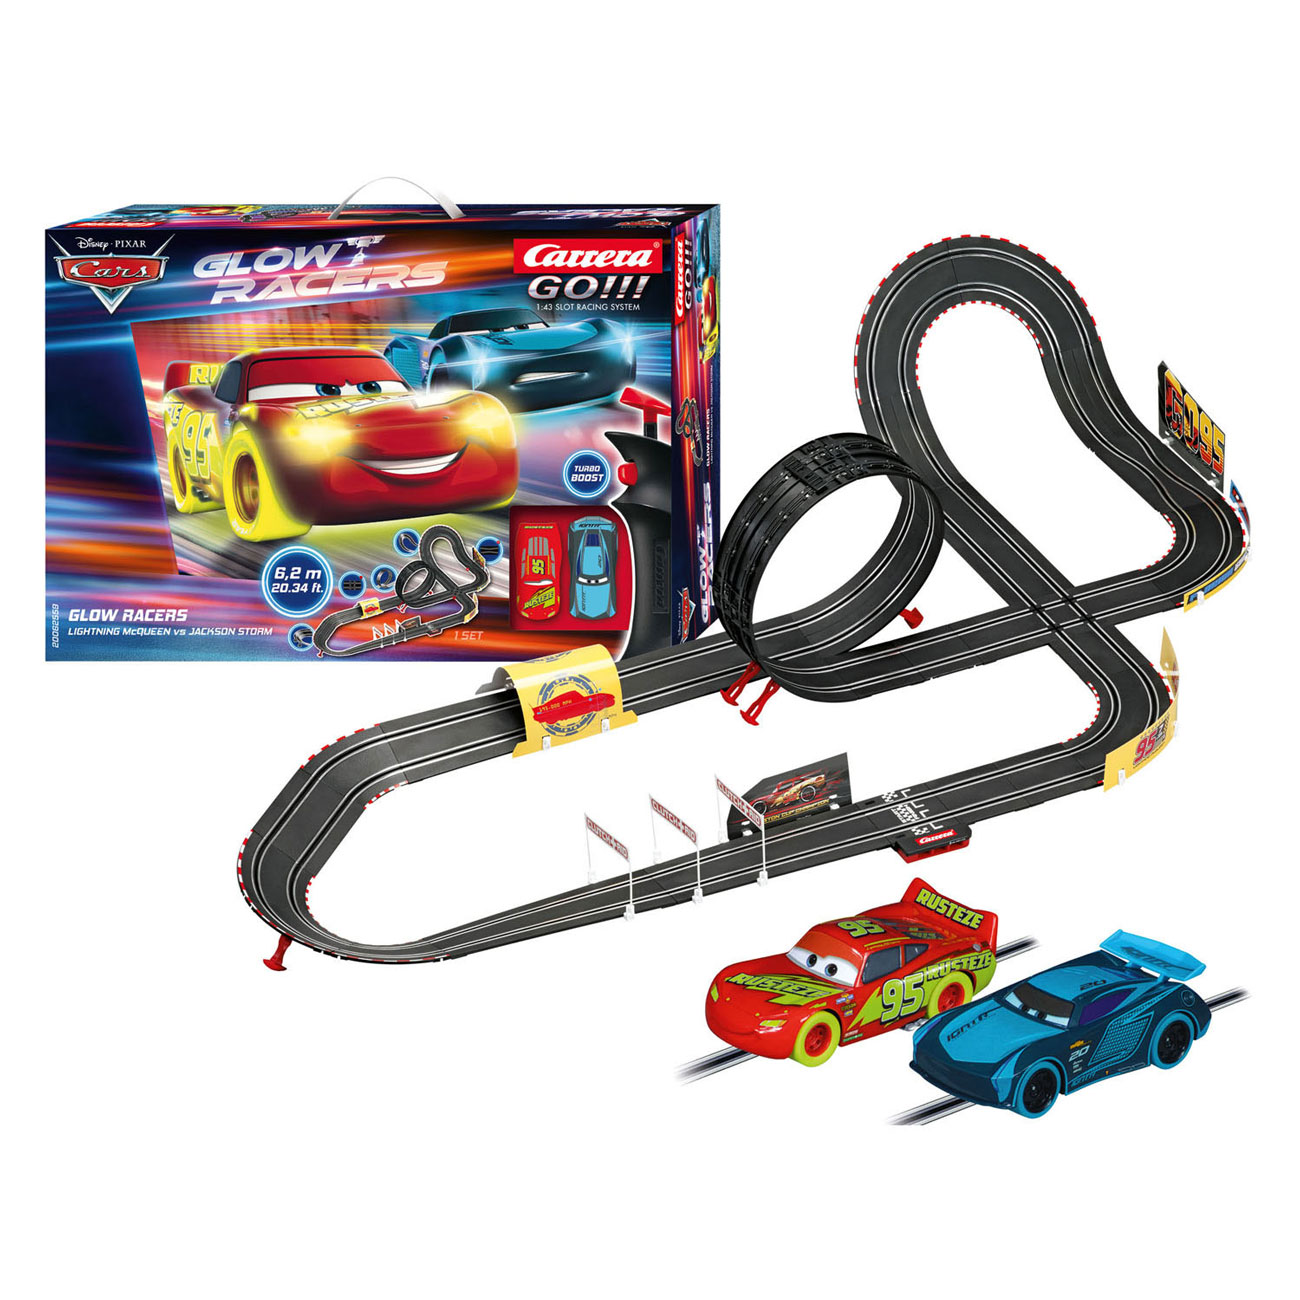 Circuit de voiture Glow Racer